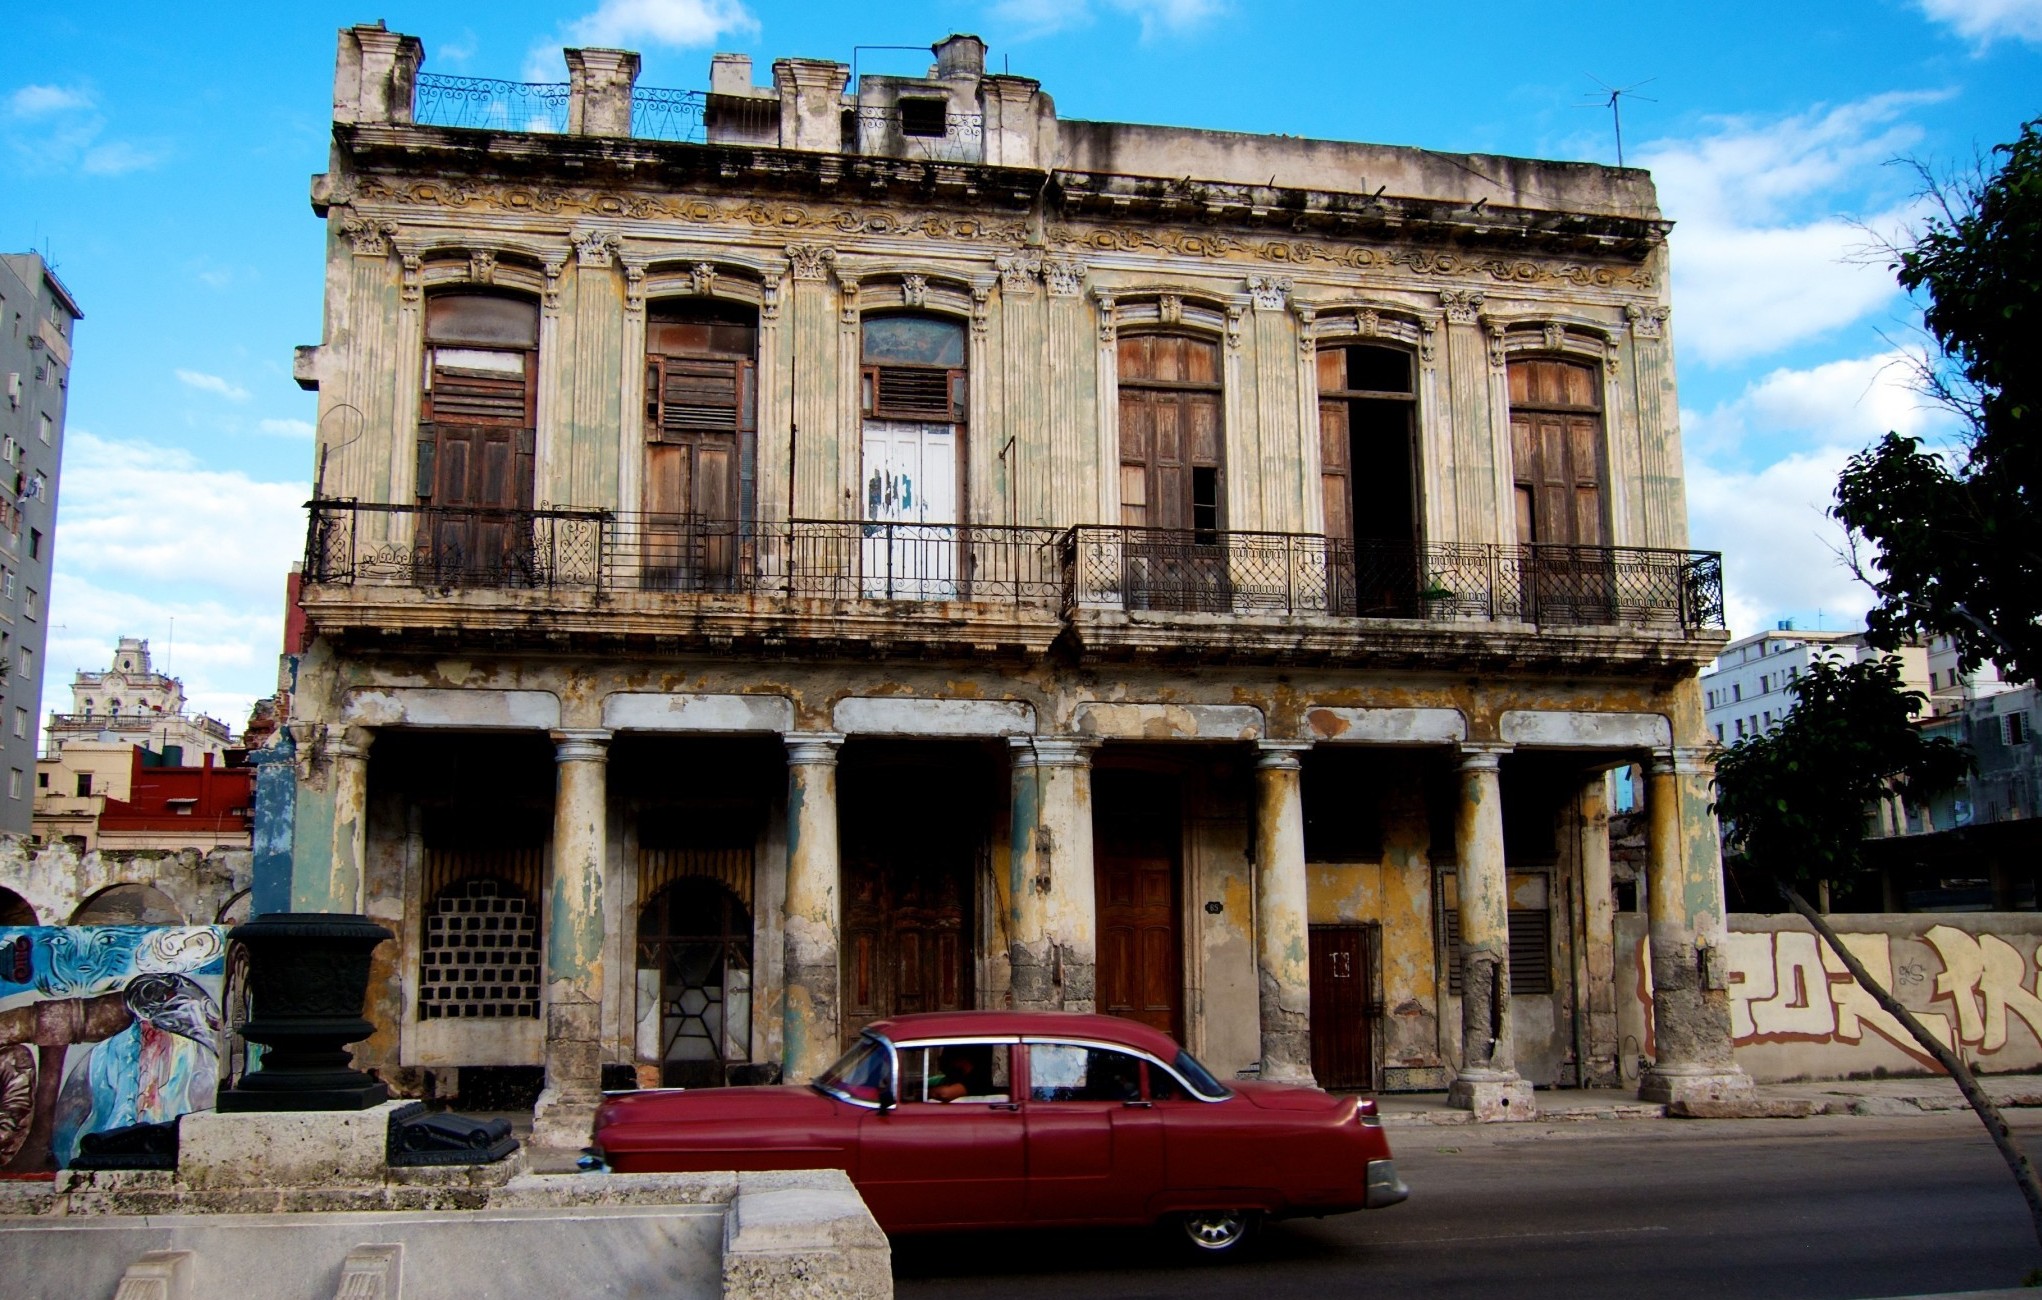 Oldtimers in Cuba - Havana